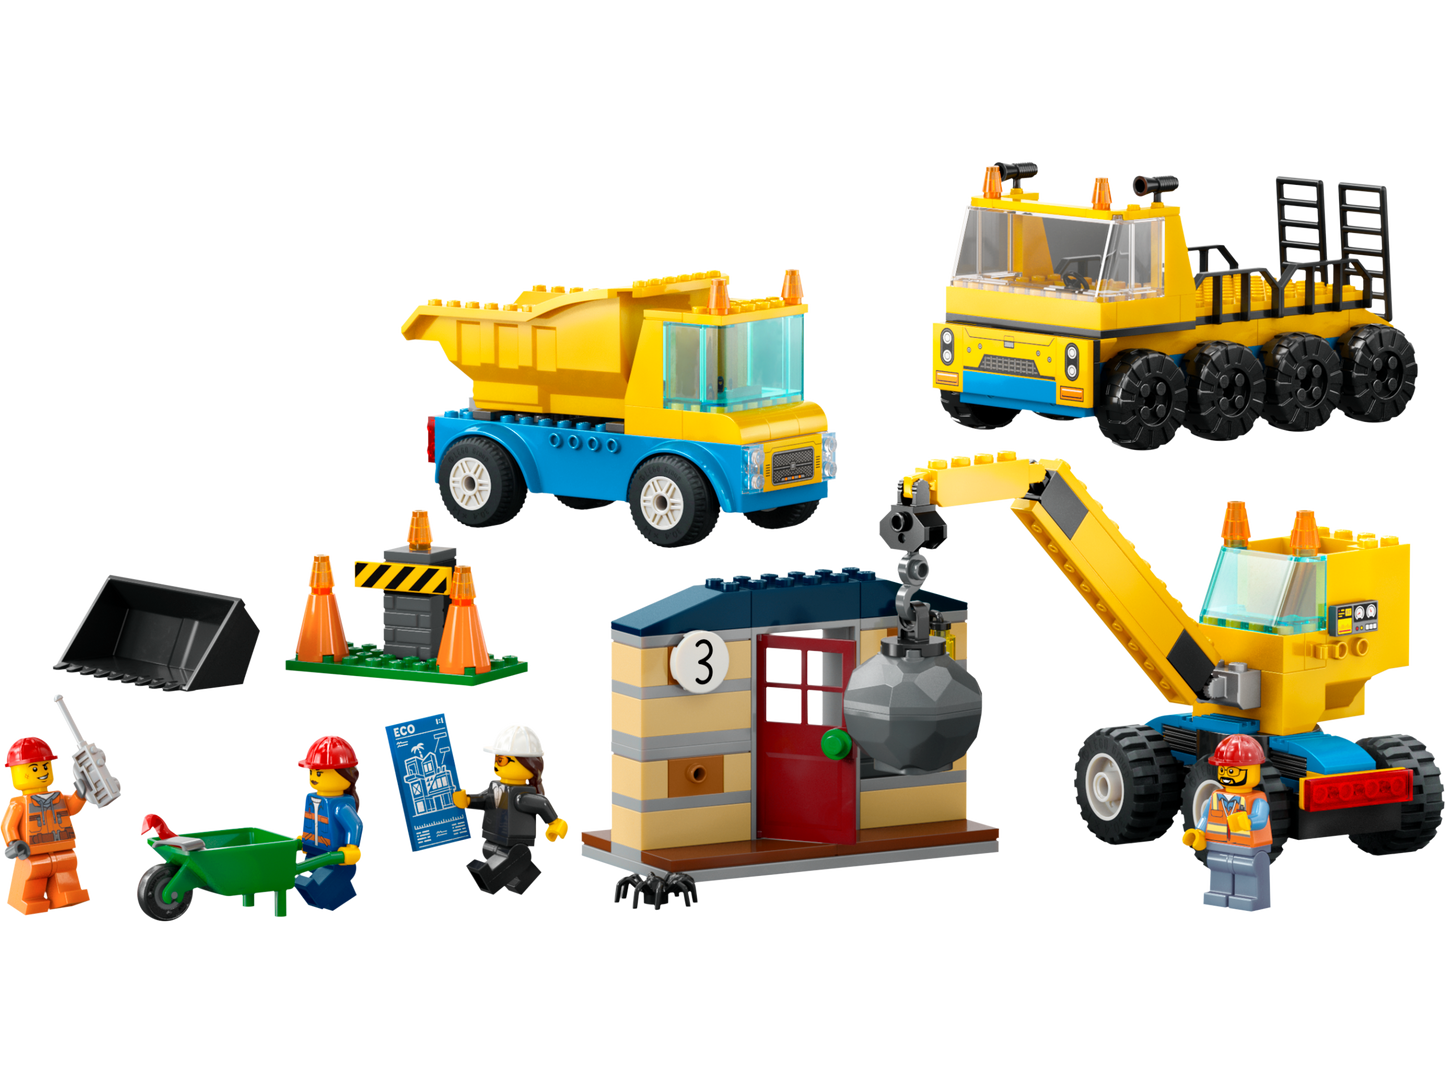 LEGO® set 60391